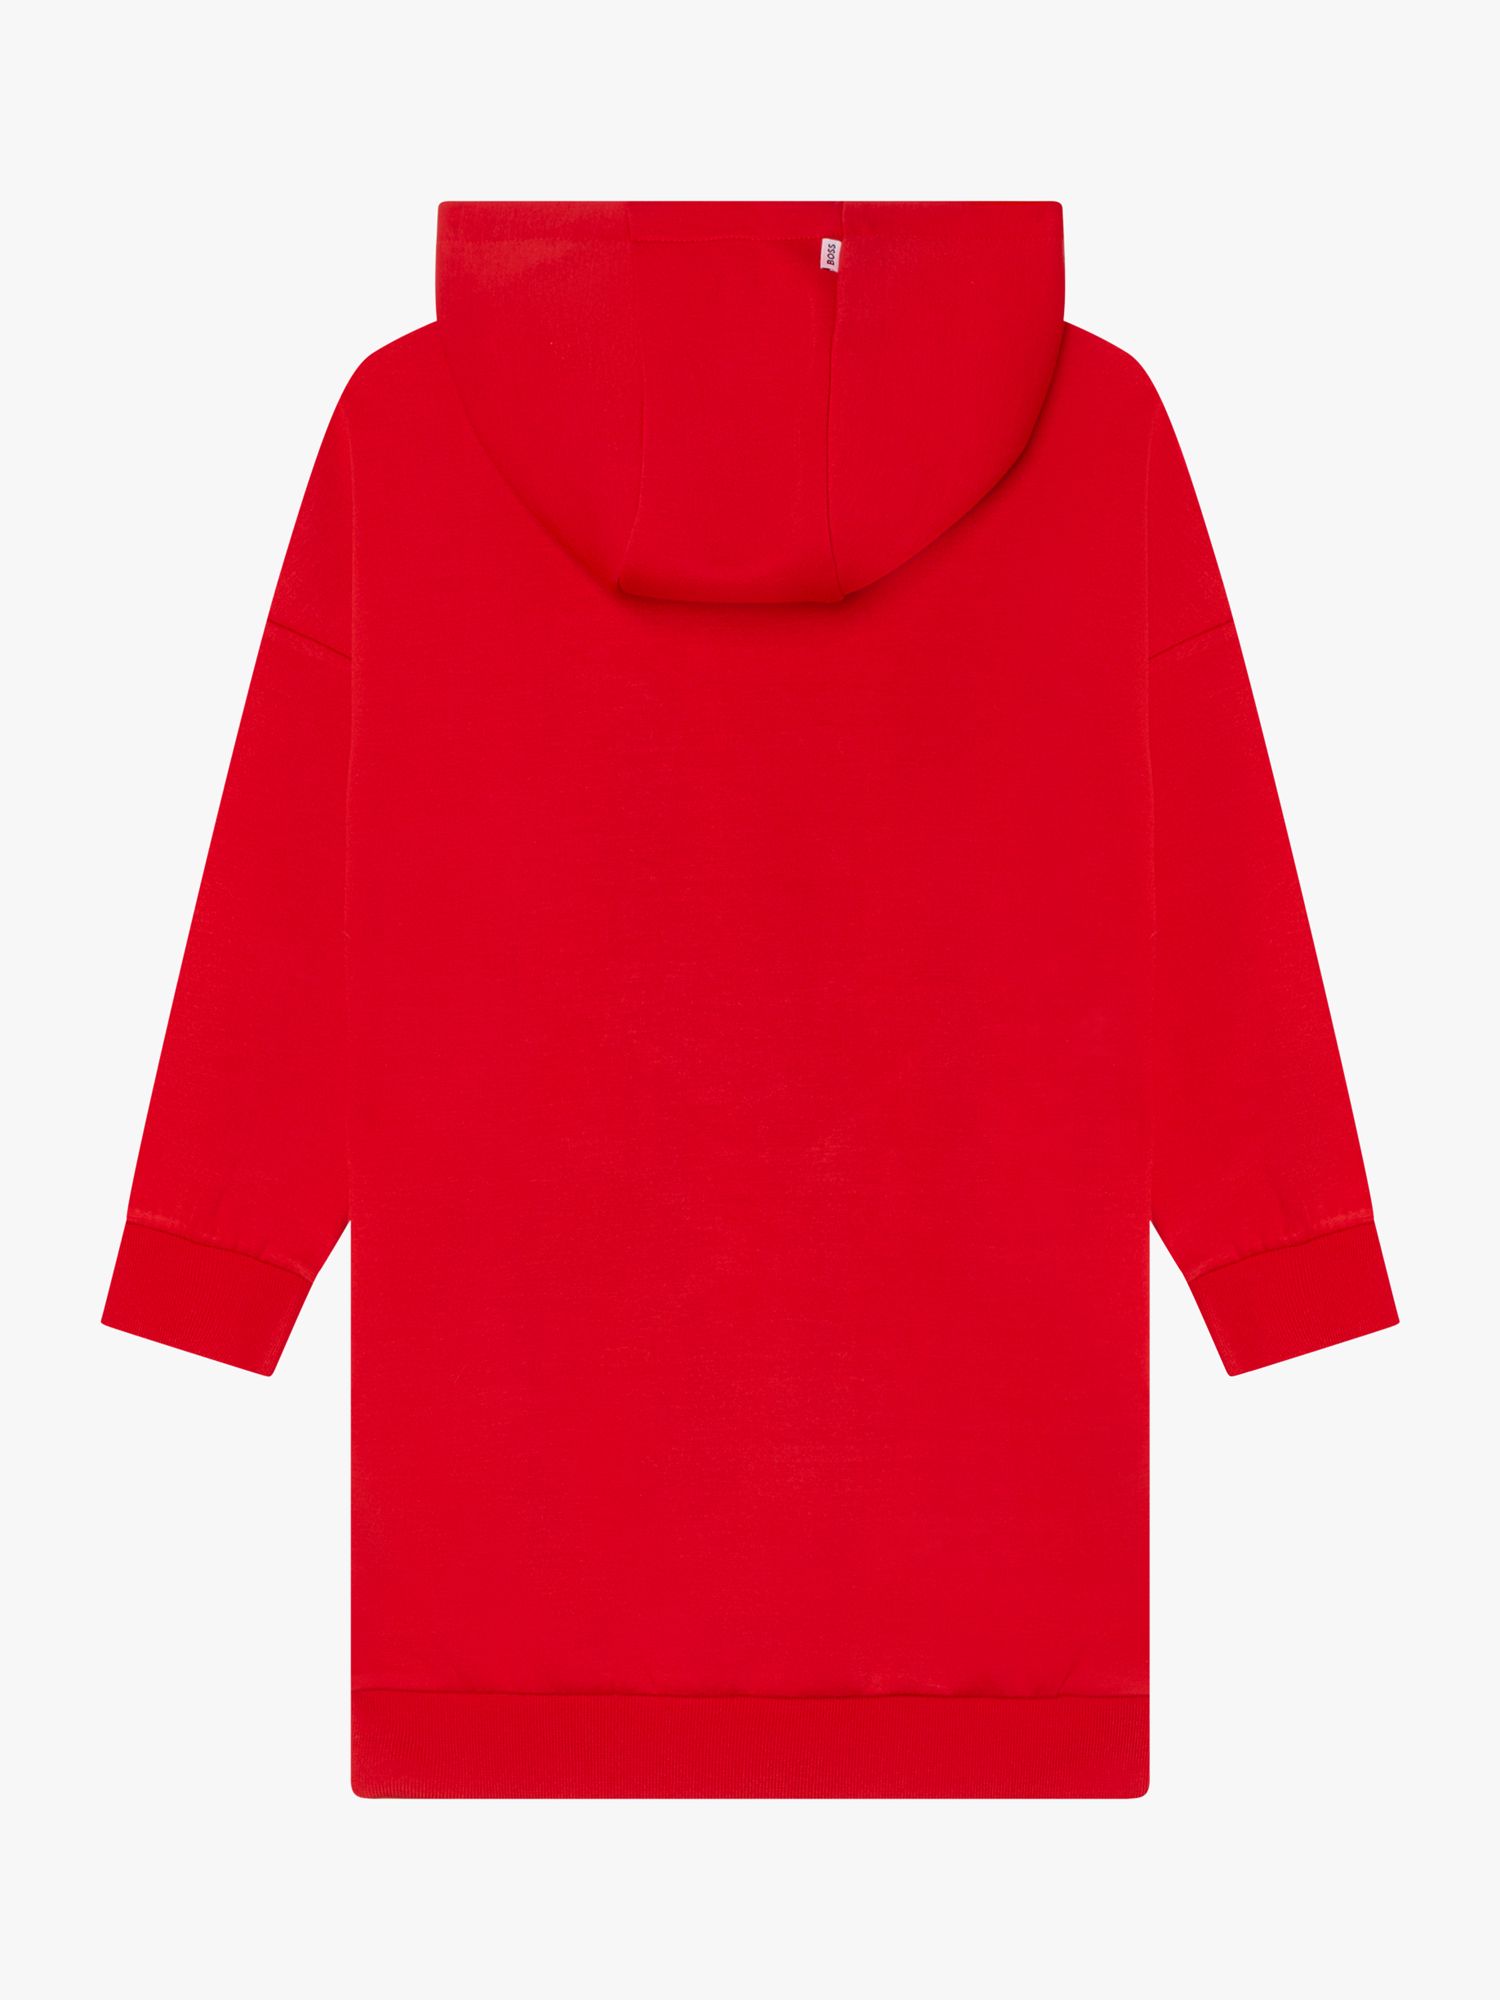 HUGO BOSS Kids' Logo Hooded Dress, Red Crimson, 4 years